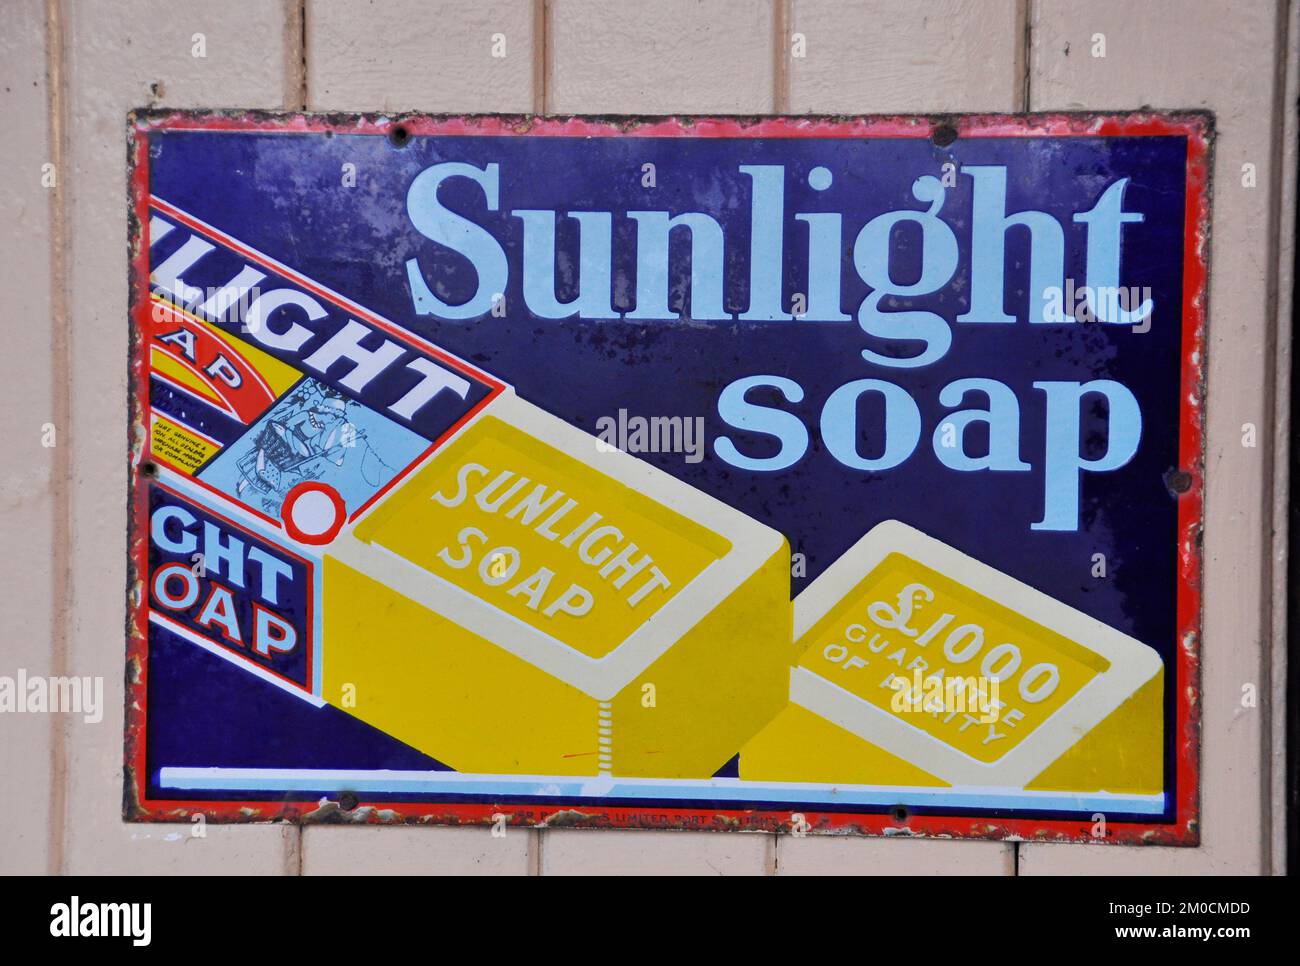 Enseigne en métal émaillé, publicité savon de soleil photographié à la gare de Tenterden à Kent, Angleterre, Royaume-Uni Banque D'Images